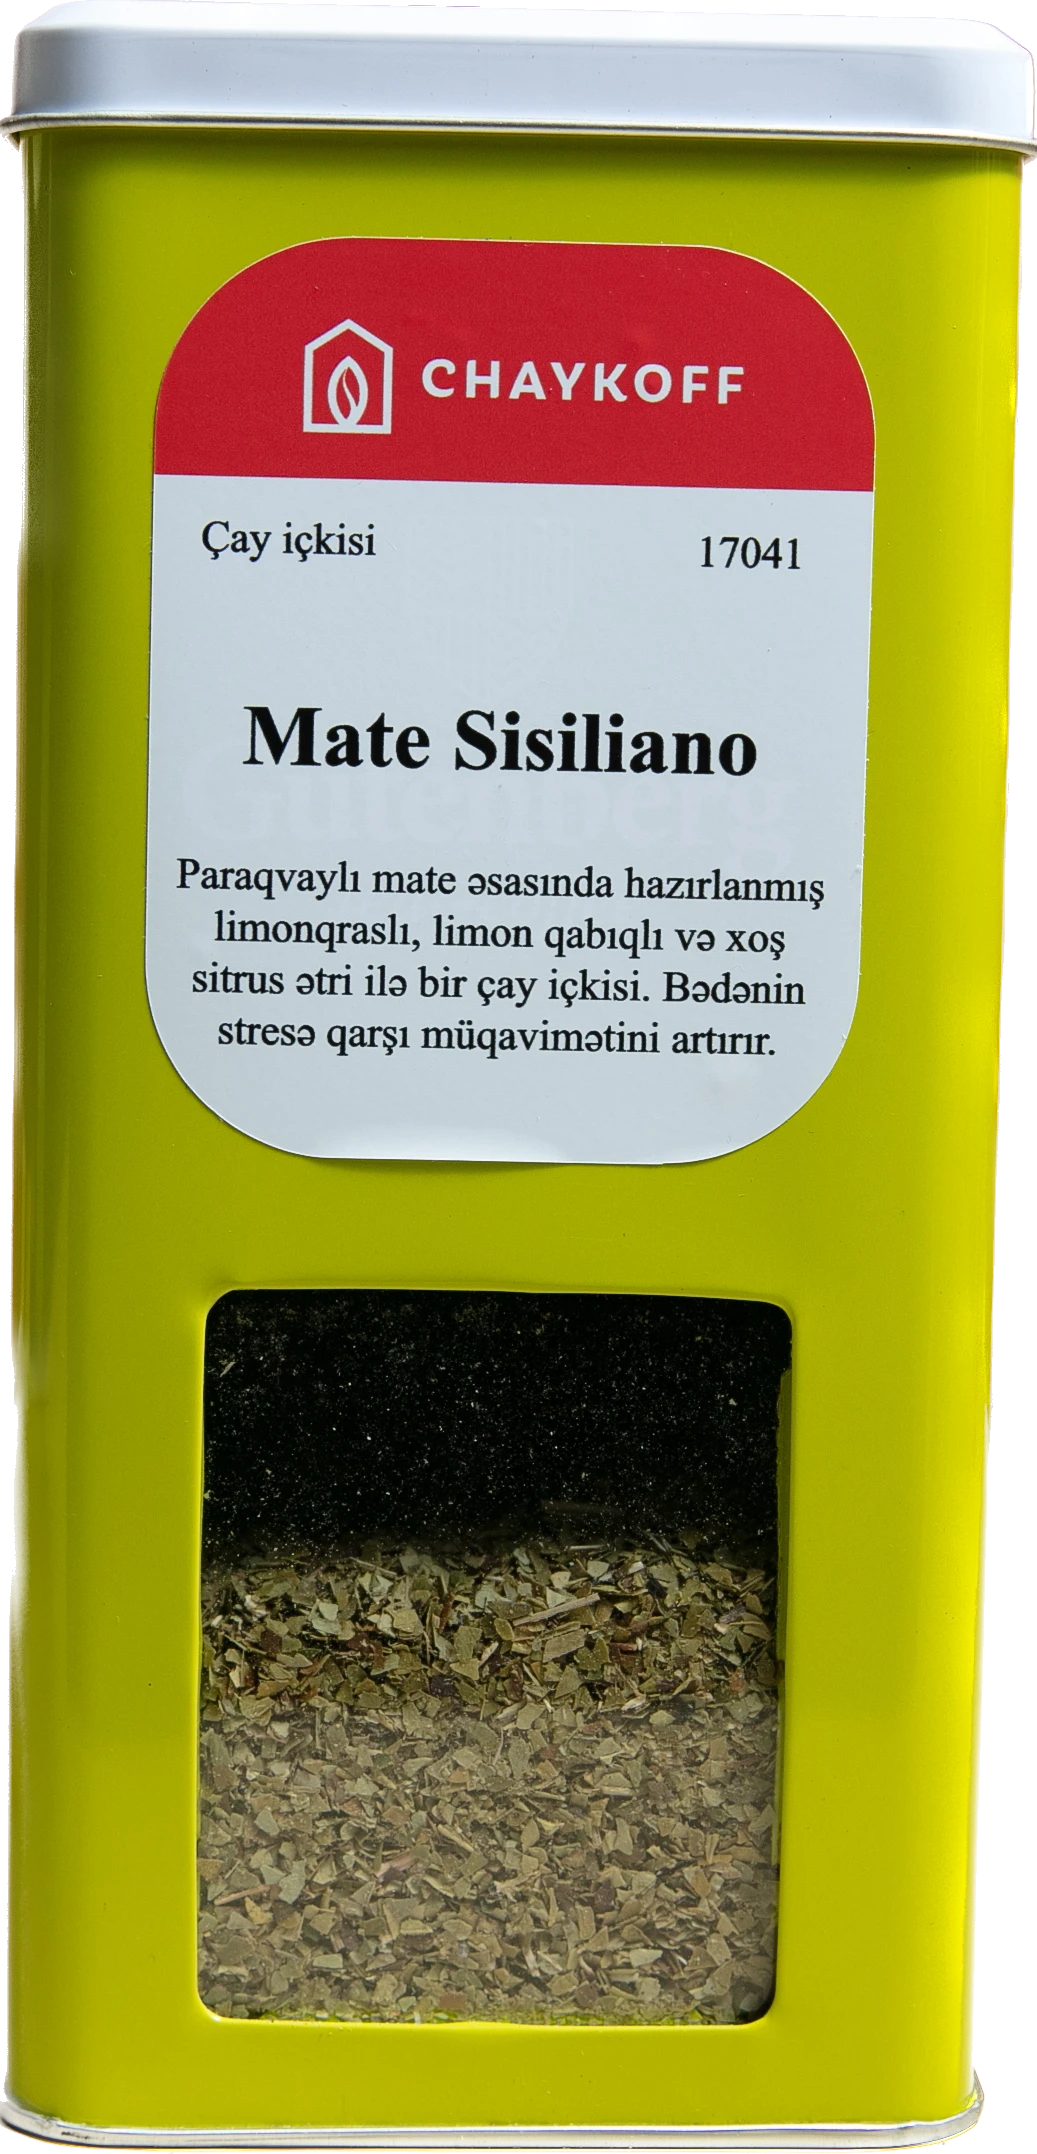 Mate Sisiliano Çay İçkisi (100 qr)